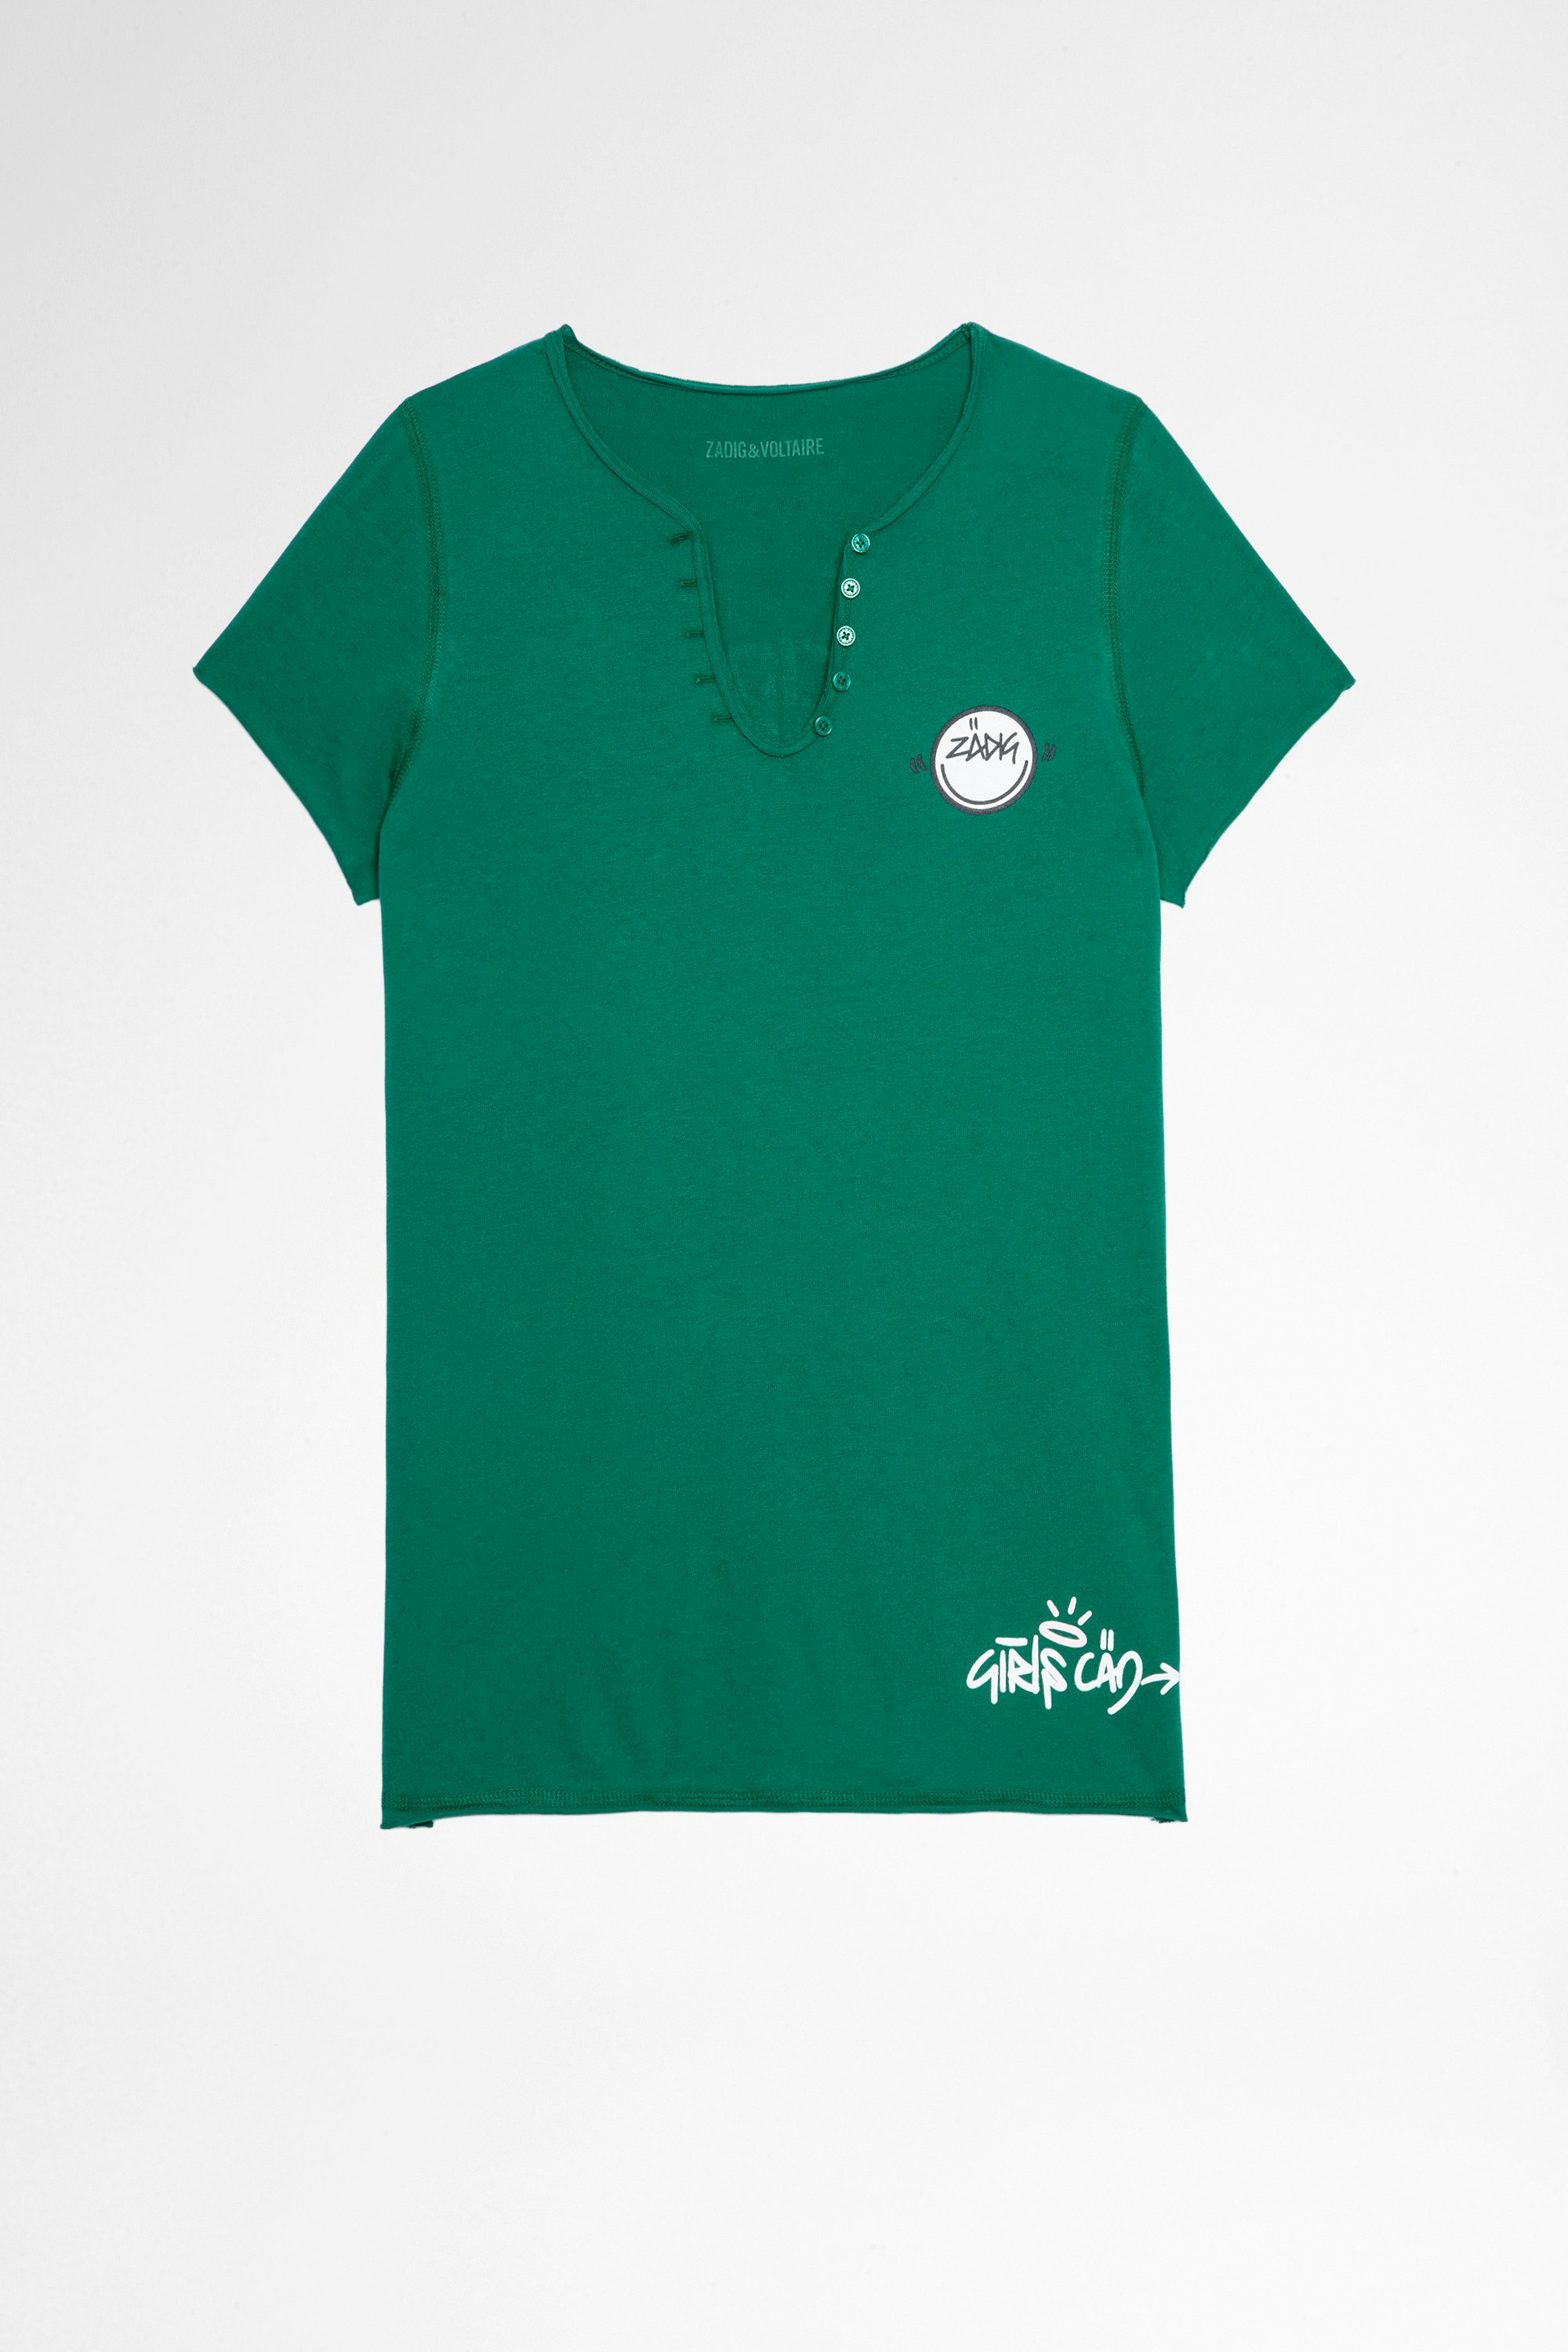 T-shirt mit Henley-Ausschnitt Multicusto Damen-Shirt mit Henley-Ausschnitt Girls can do anything, aus grüner Baumwolle. Dieses Produkt ist nach GOTS zertifiziert und aus Fasern aus biologischem Anbau hergestellt.